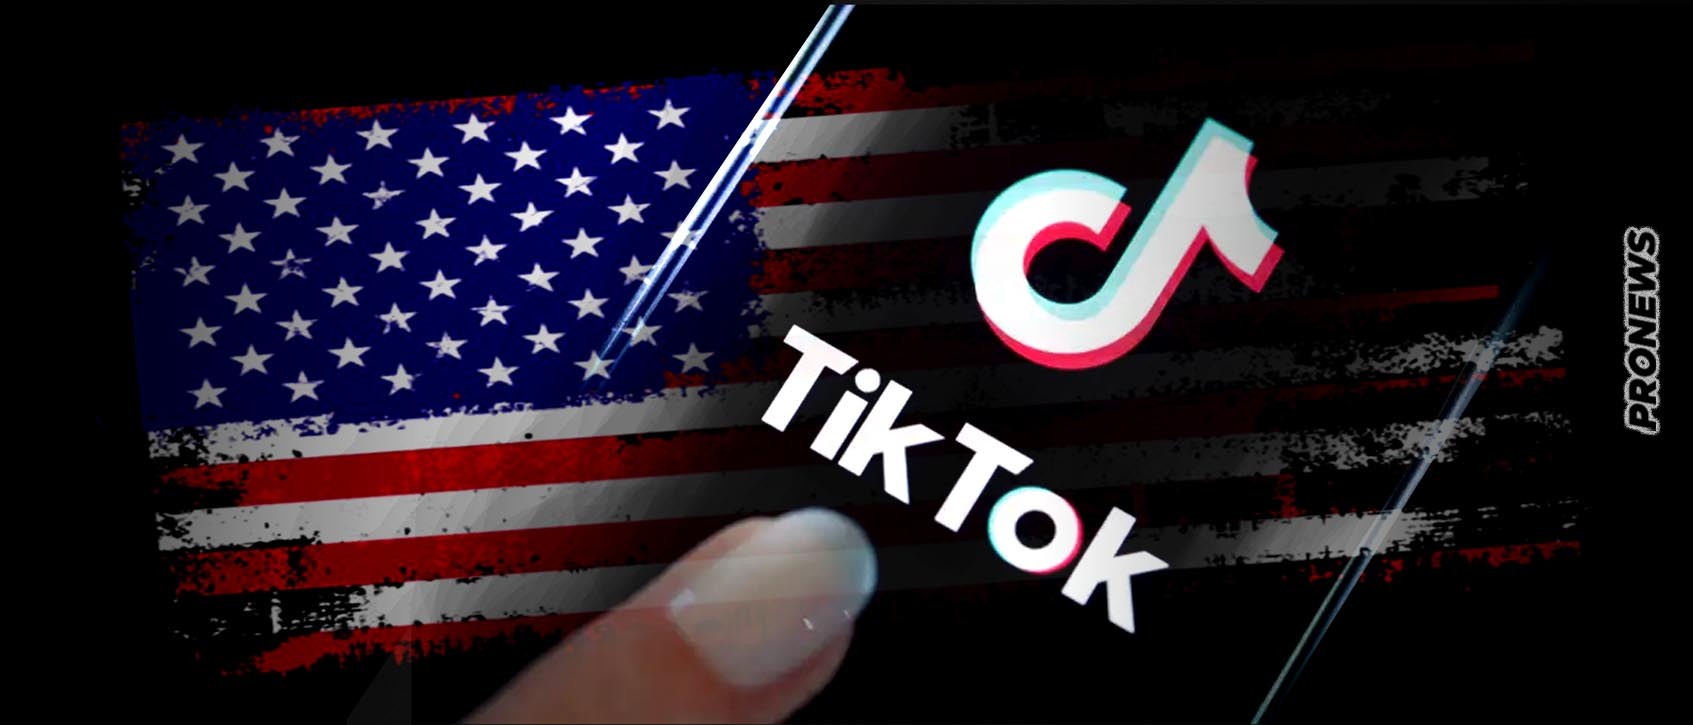 Οι ΗΠΑ απαγόρευσαν την χρήση του TikTok σε όλες τις κρατικές υπηρεσίες: «Είναι κινεζικό κατασκοπευτικό εργαλείο»